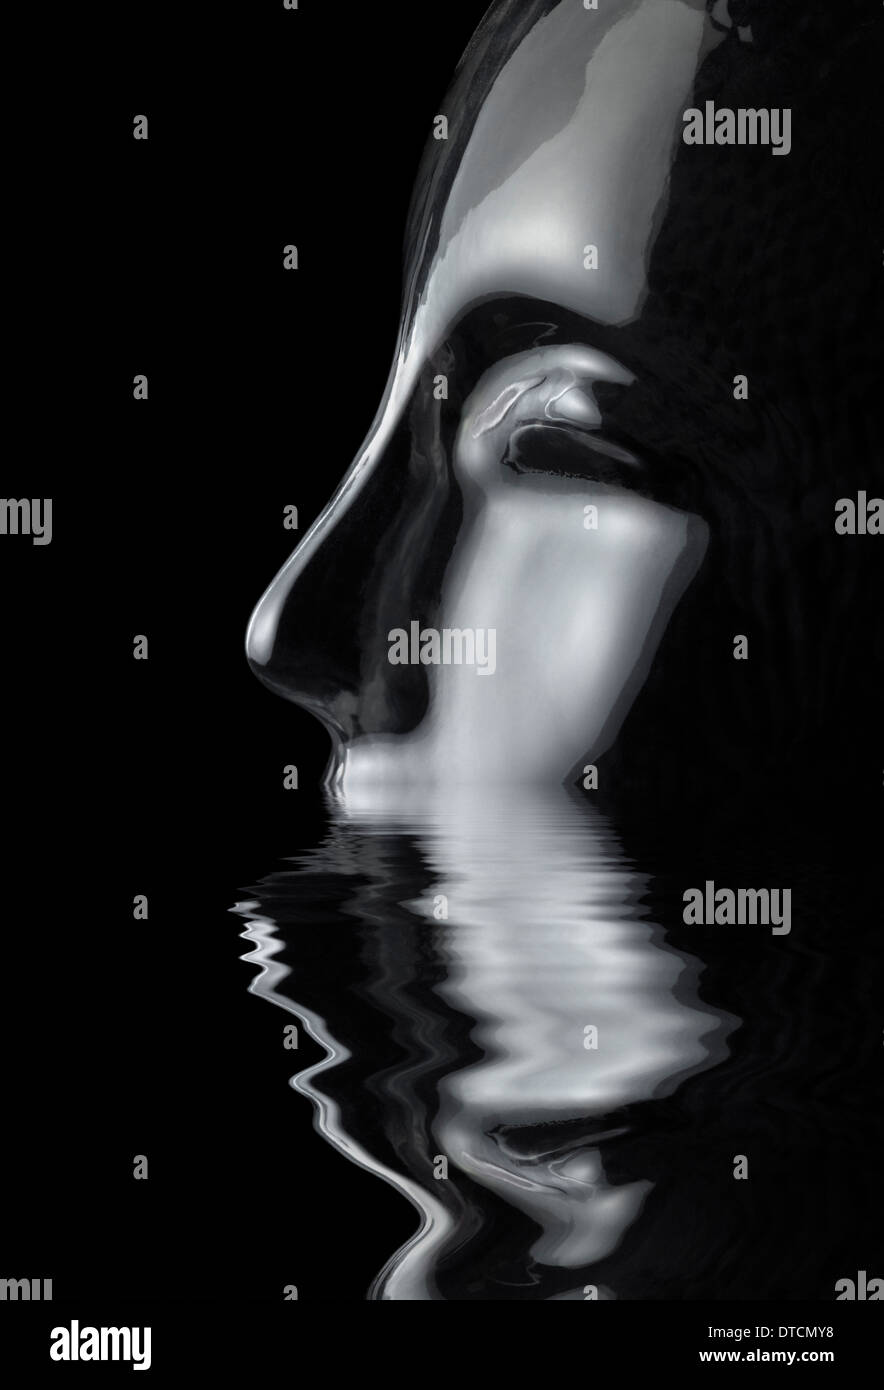 Naufragio riflettente traslucido testa umana fatta di vetro riflettente sulla superficie di acqua nella parte posteriore in nero Foto Stock